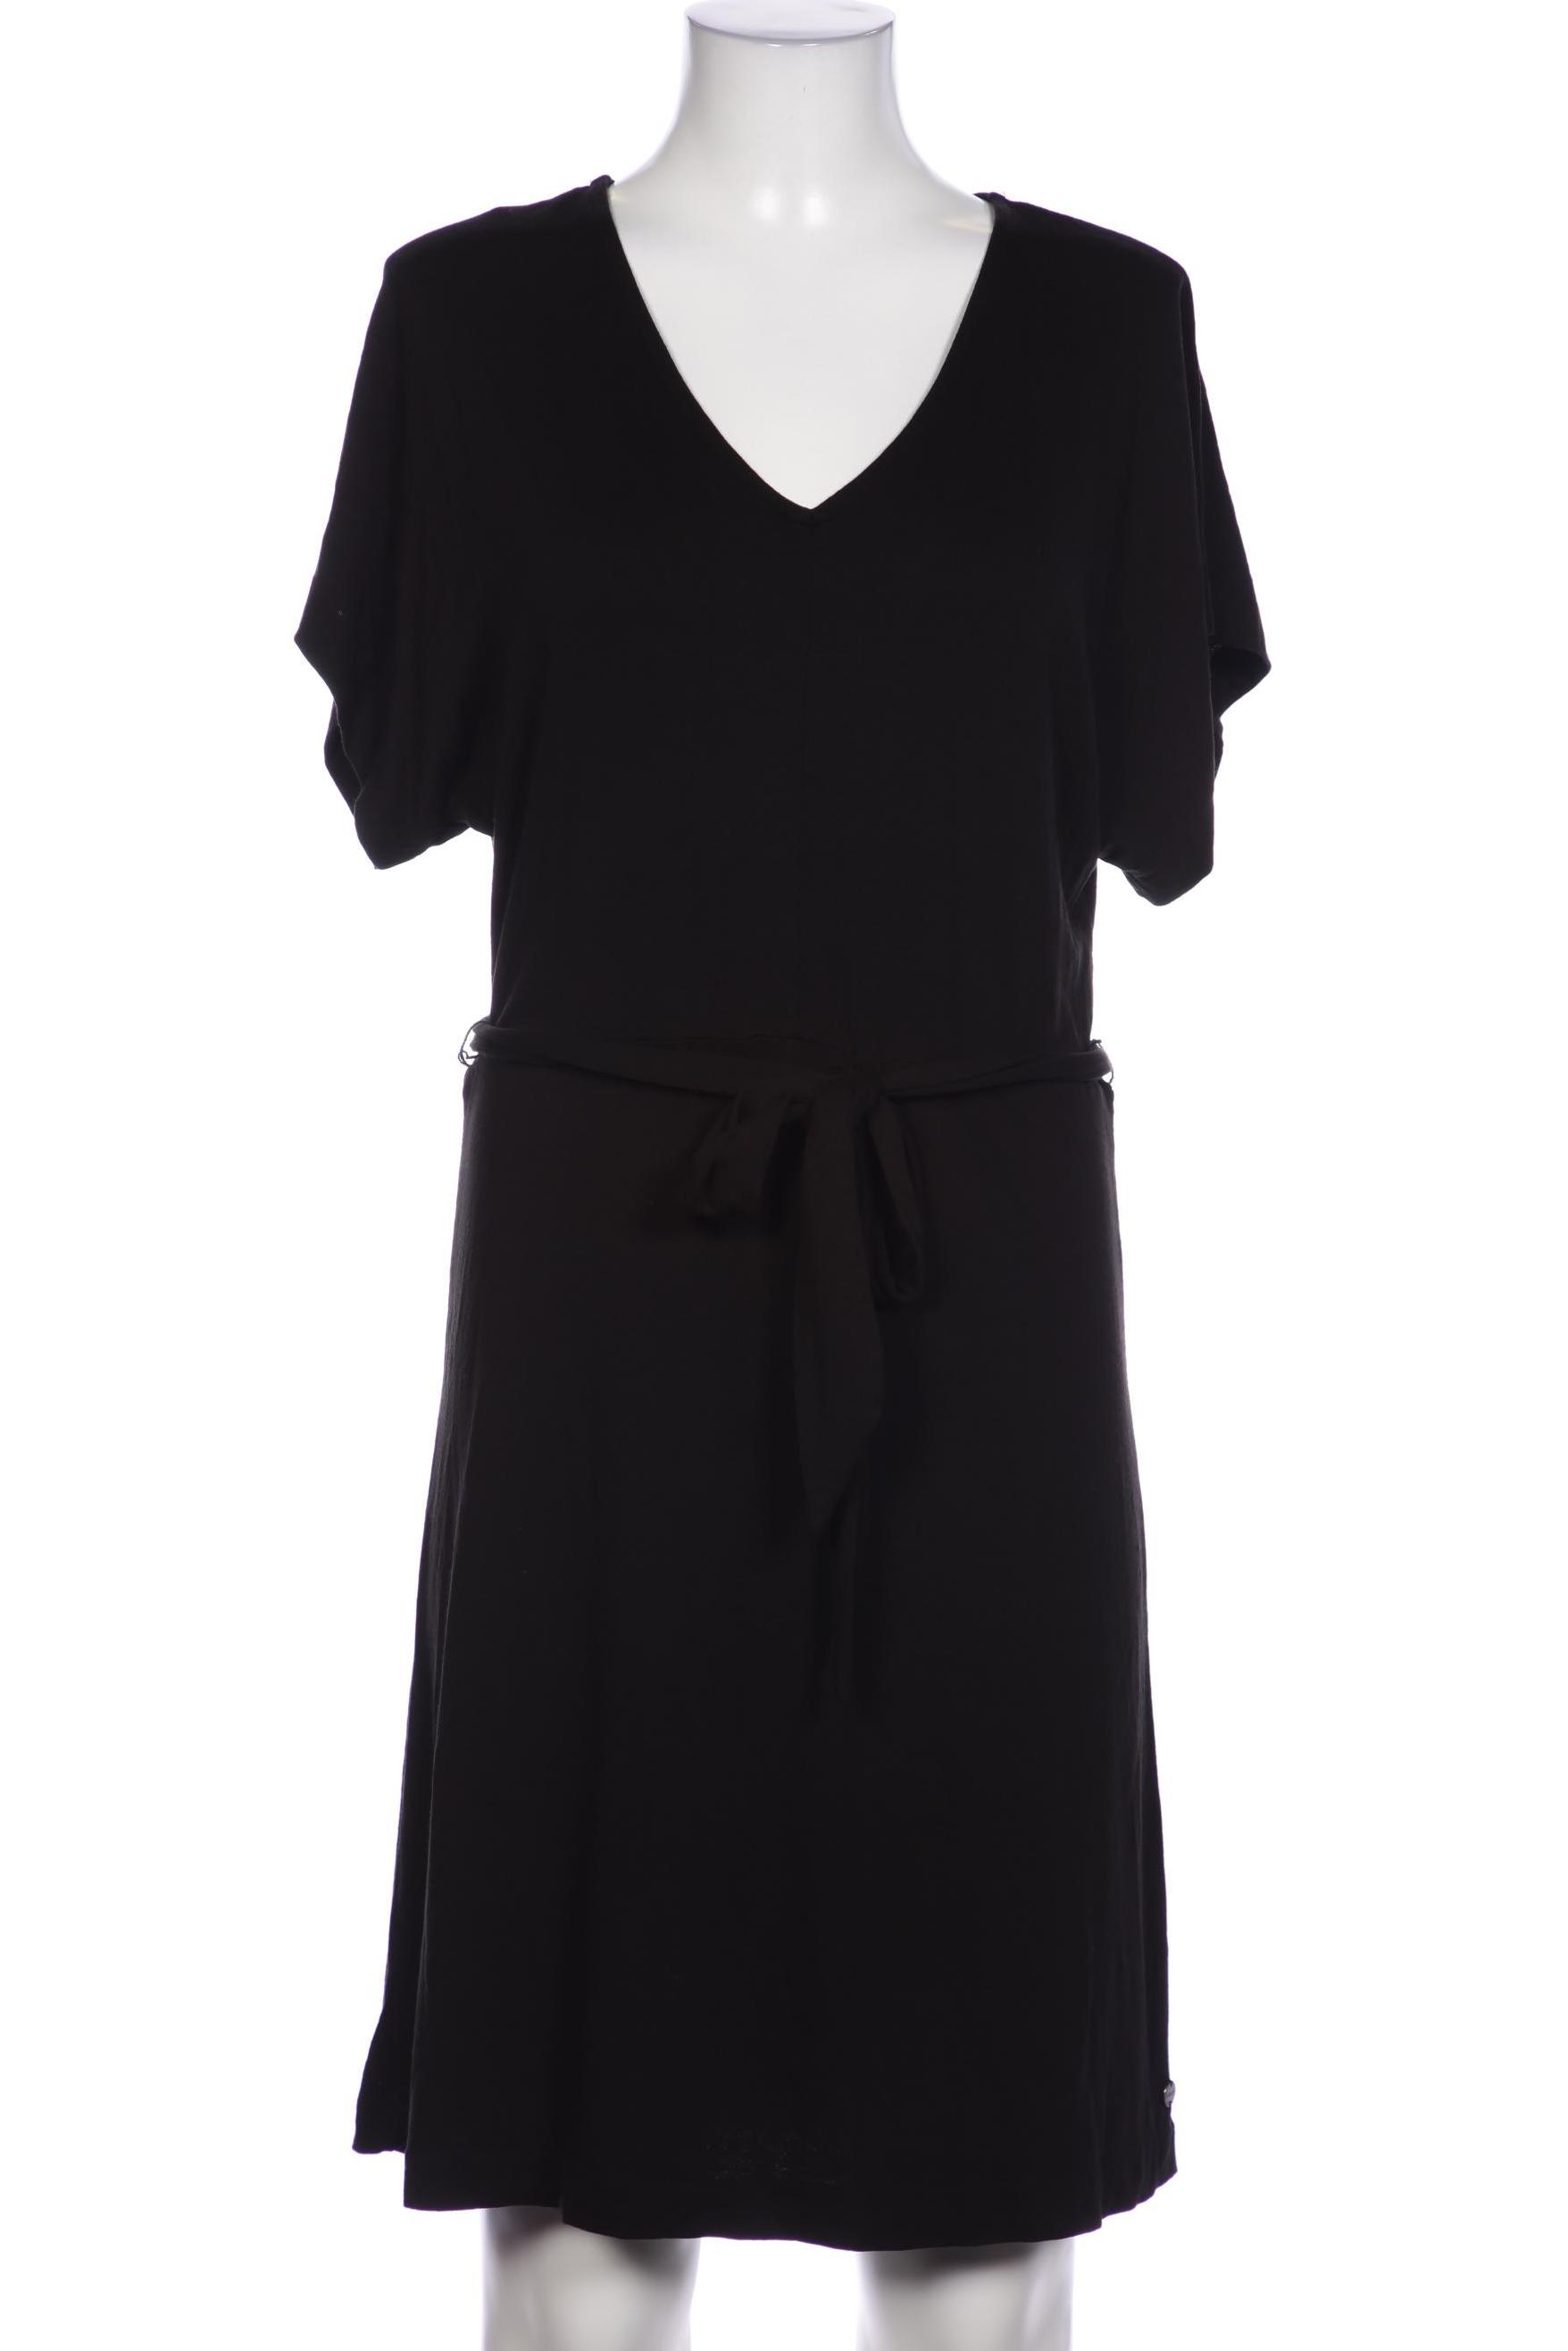 Garcia Damen Kleid, schwarz, Gr. 36 von GARCIA